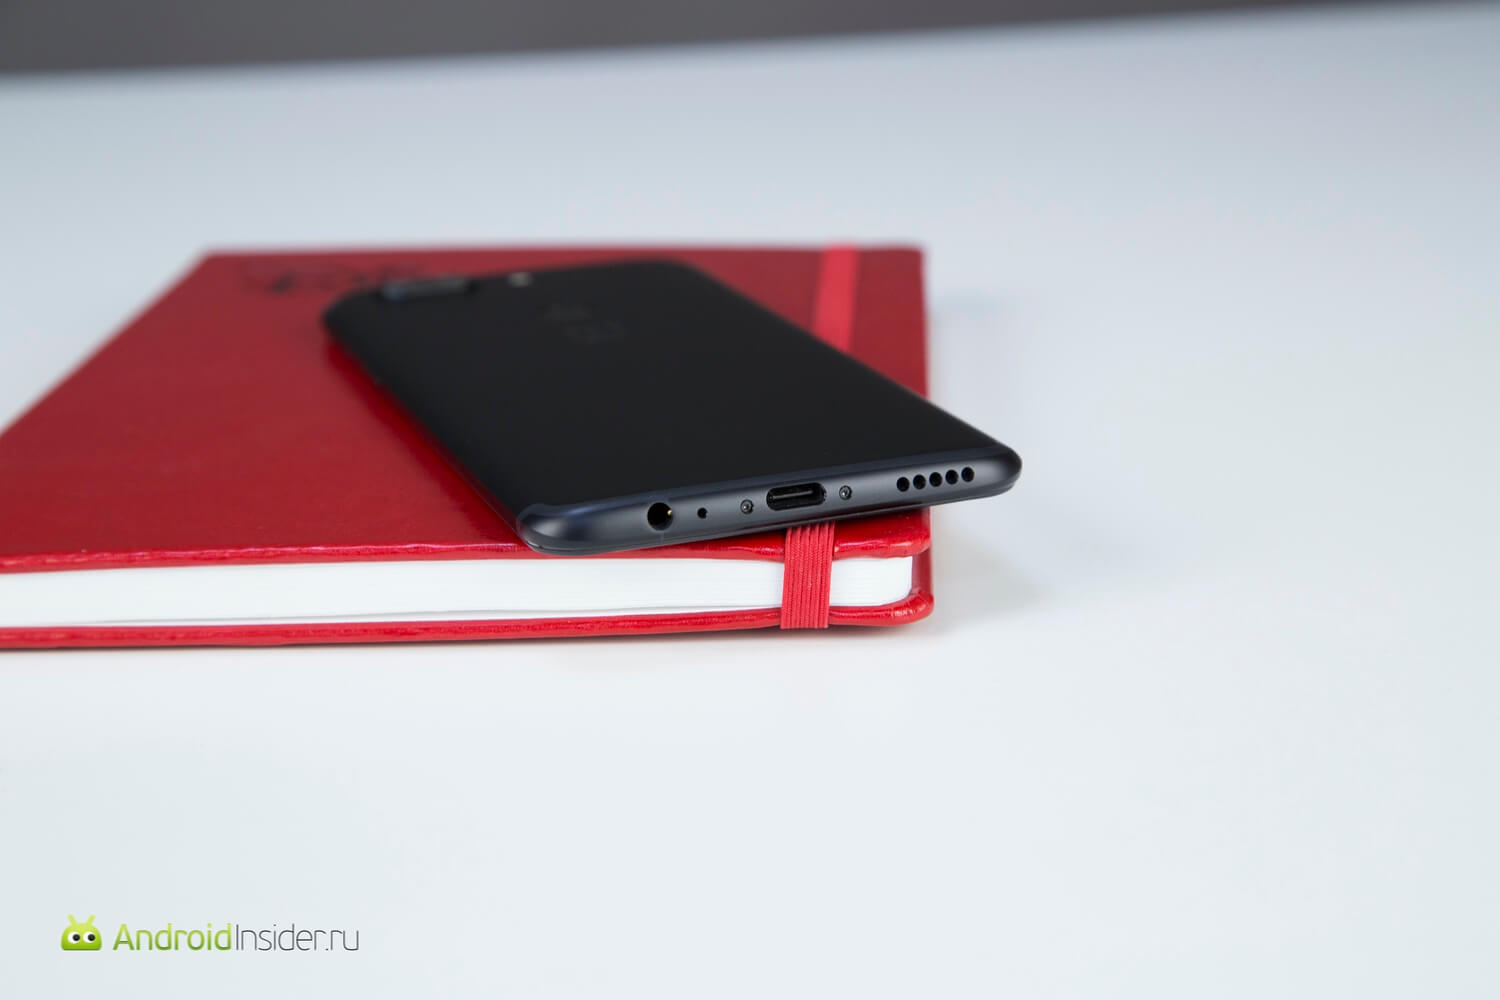 Видеообзор: OnePlus 5T — почти отличный смартфон! Впечатления. Фото.